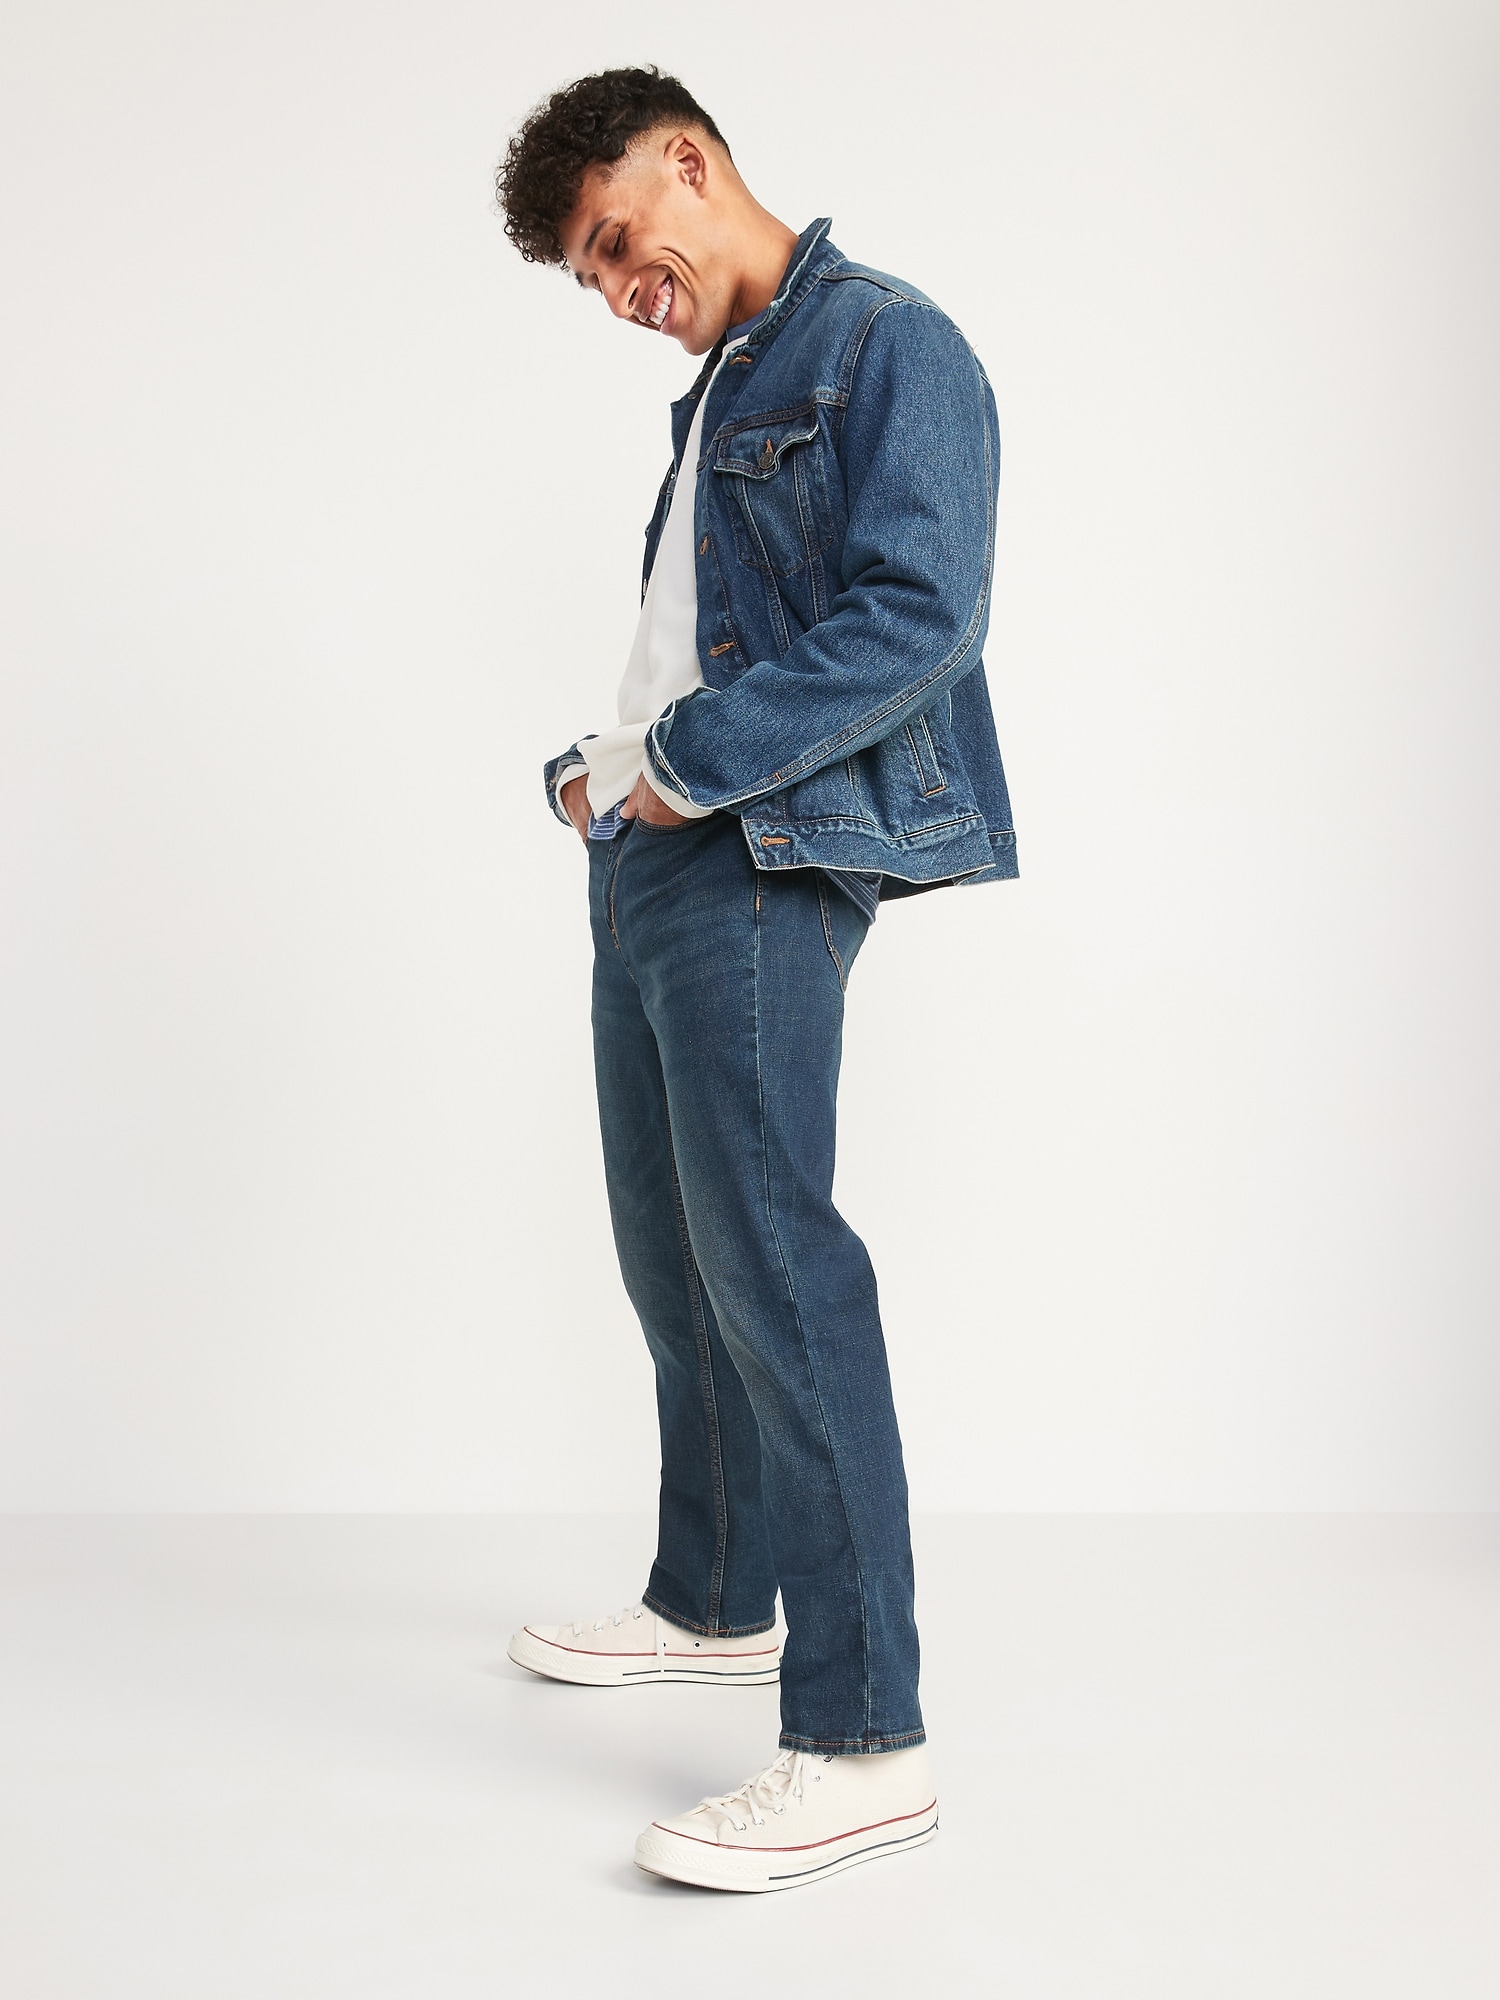 Straight jeans blog.knak.jp